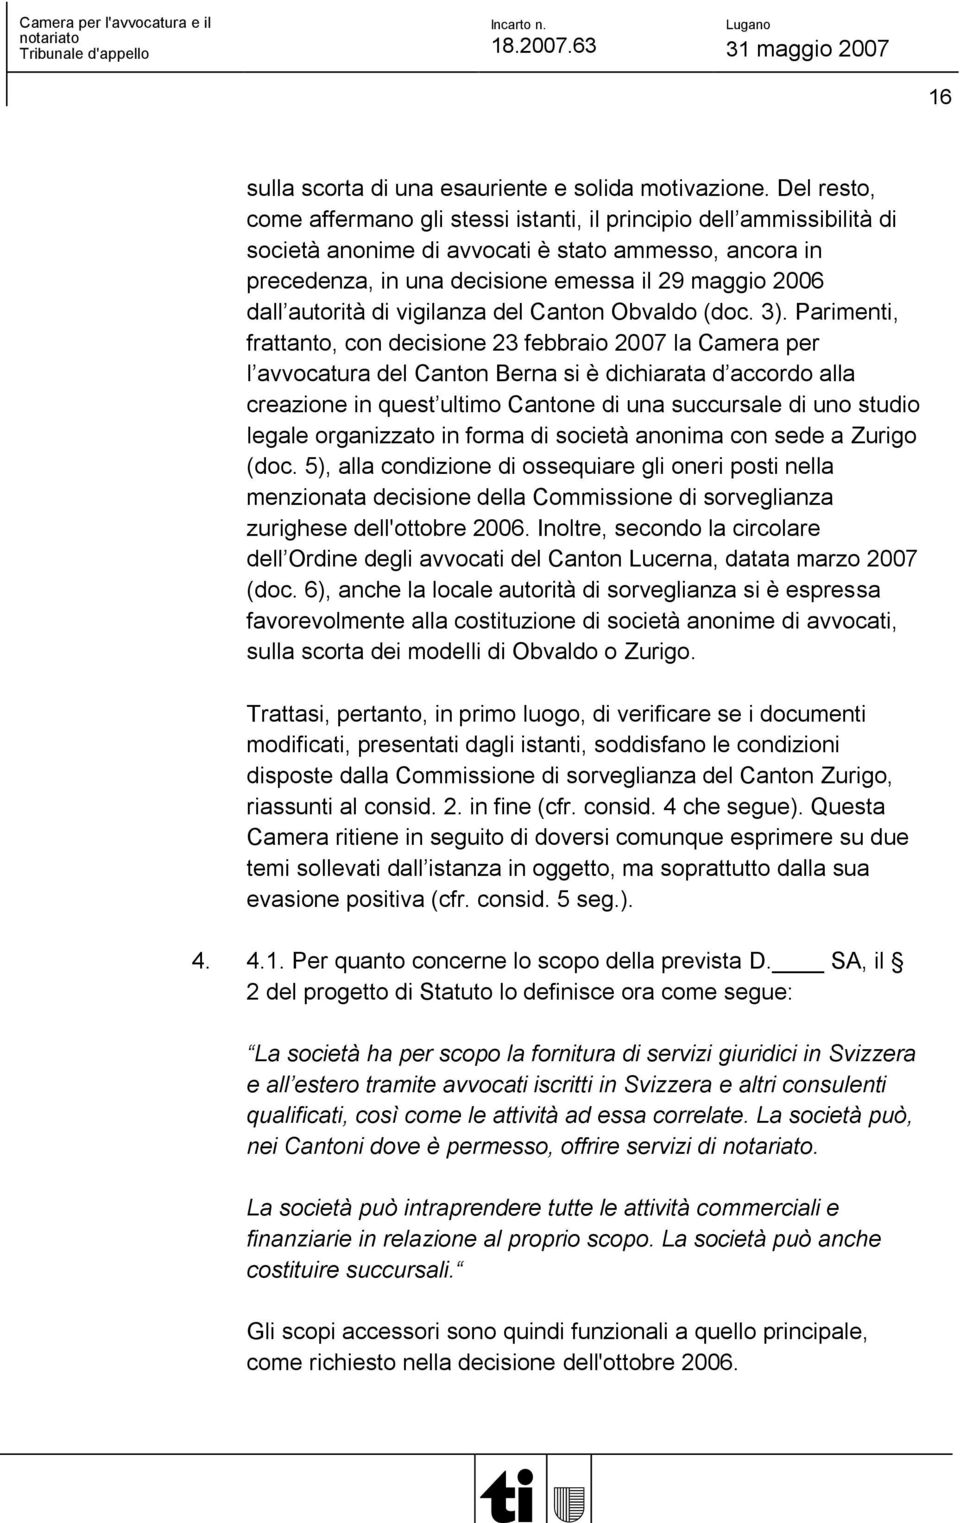 autorità di vigilanza del Canton Obvaldo (doc. 3).